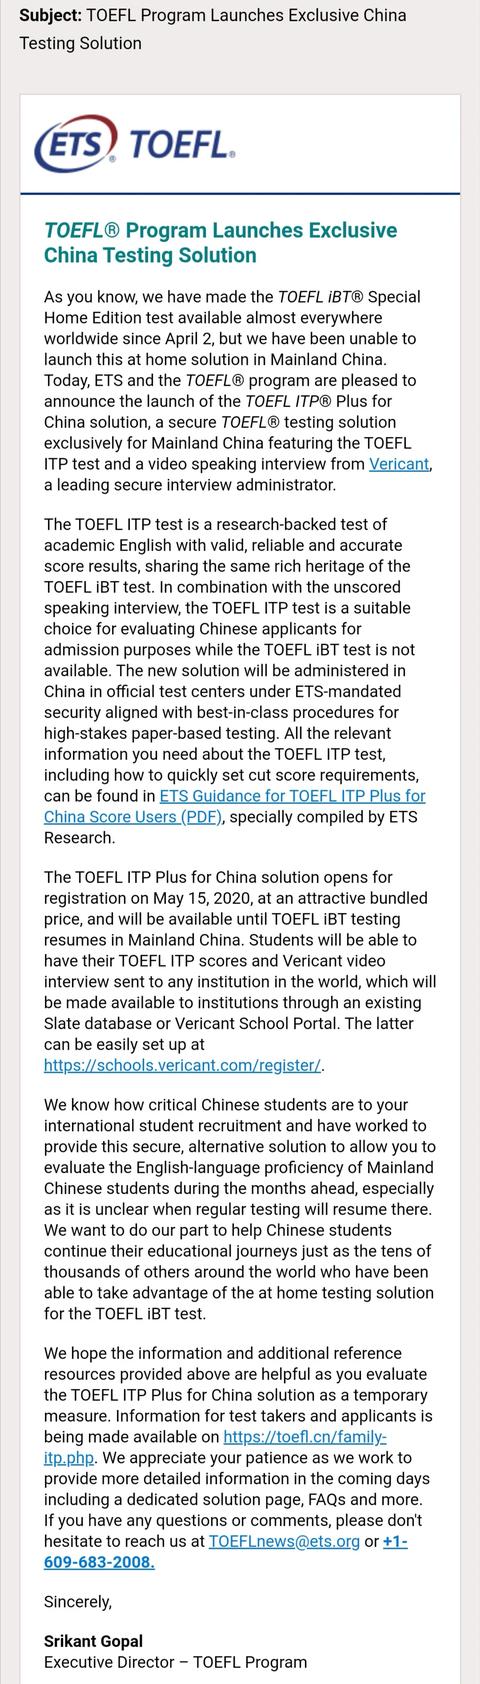 最新，托福官方推出疫情期间大陆临时替代考试TOEFL ITP Plus